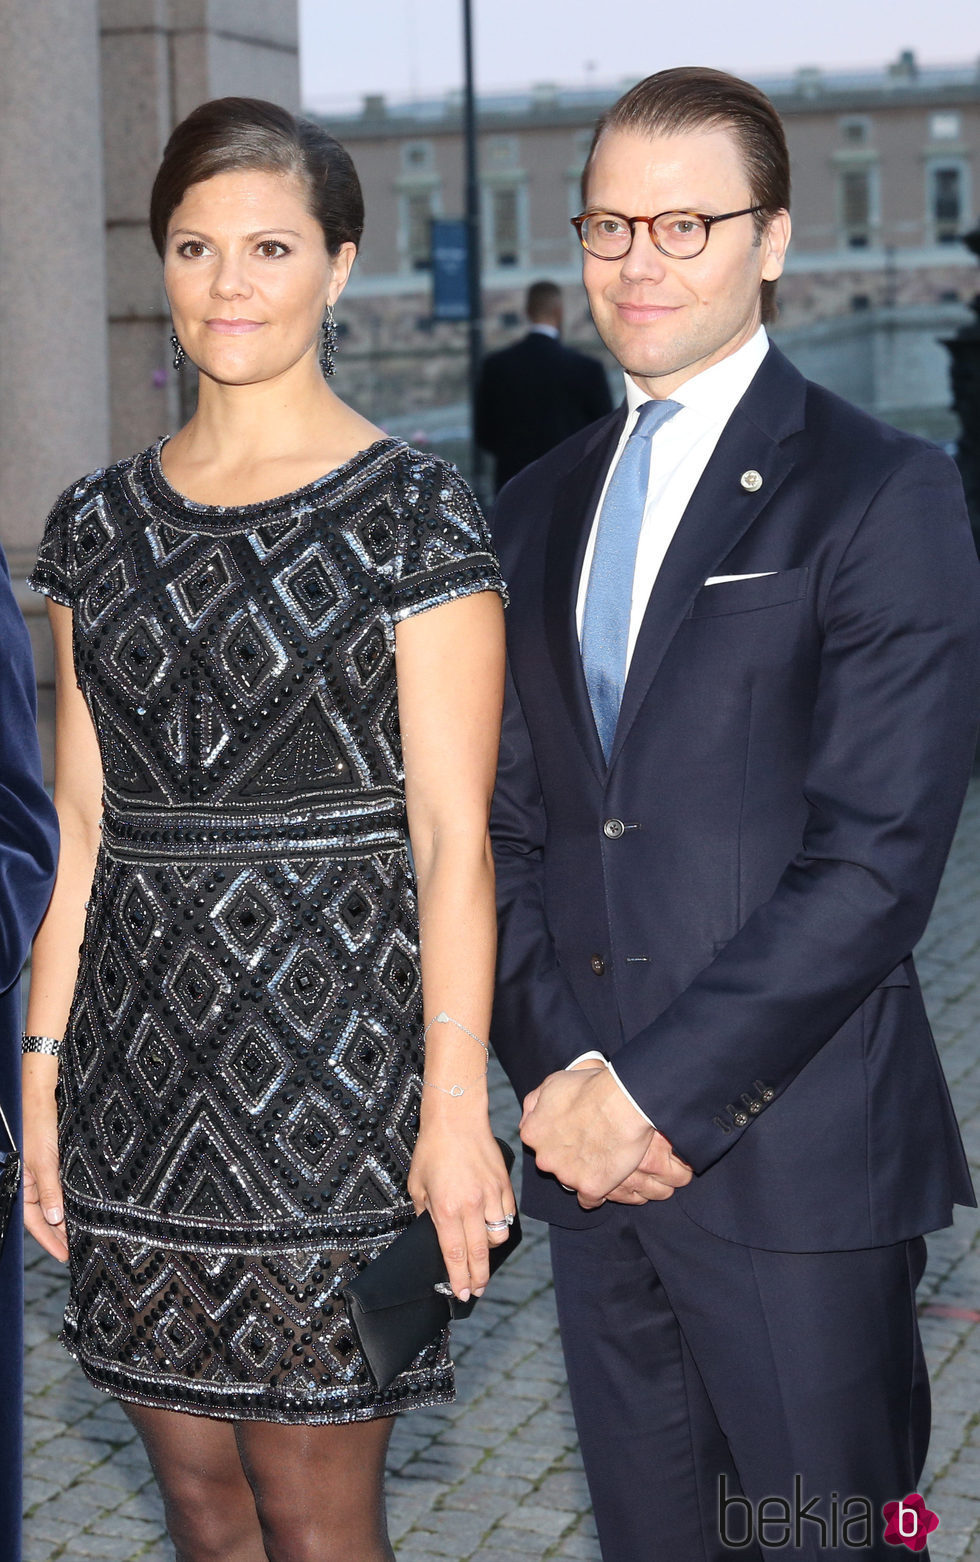 Daniel de Suecia en su 42 cumpleaños con la Princesa Victoria